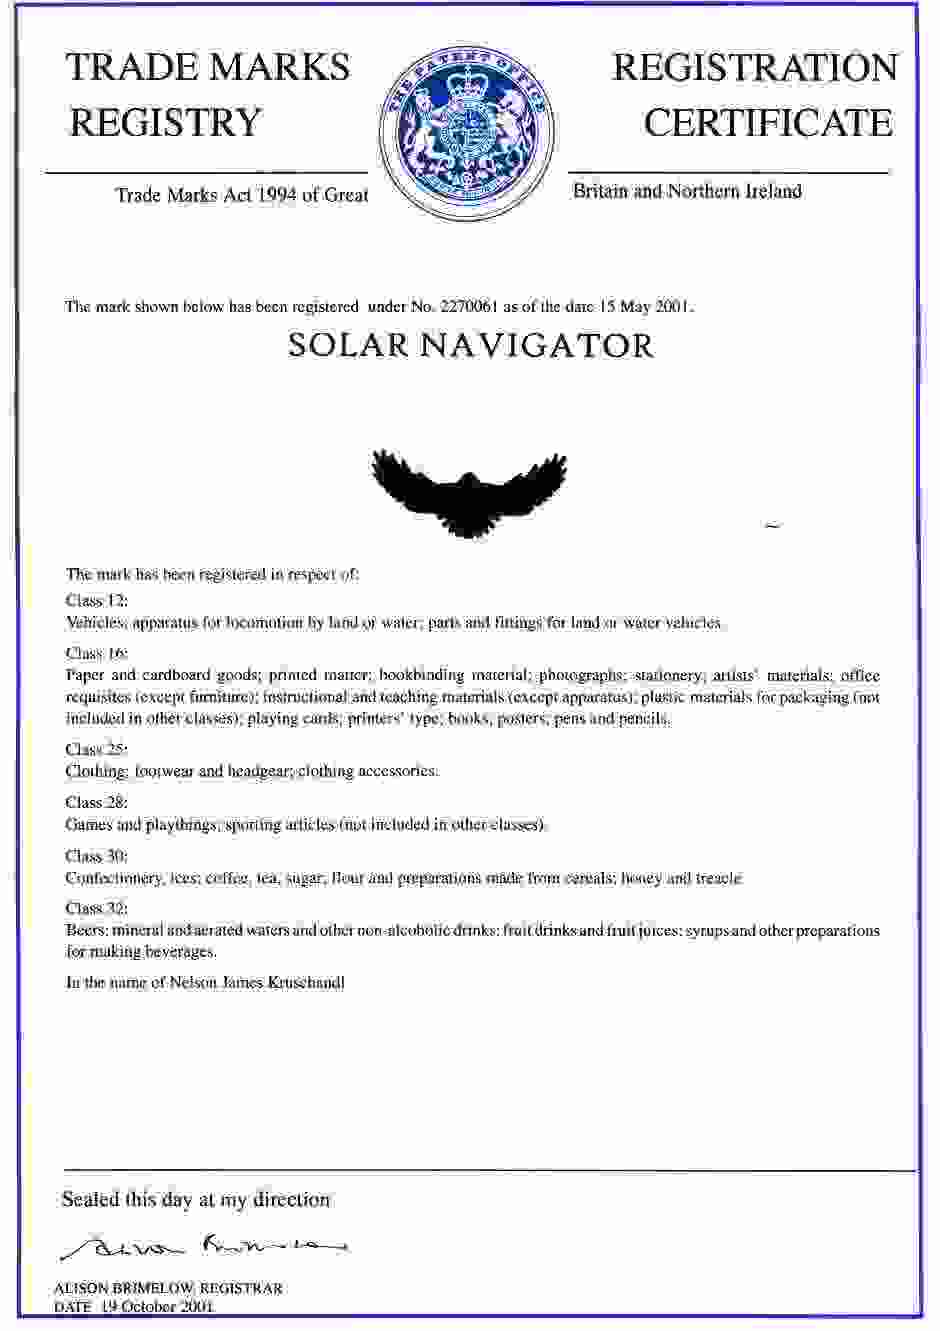 Solar Navigator UK trade mark certificate cola spice